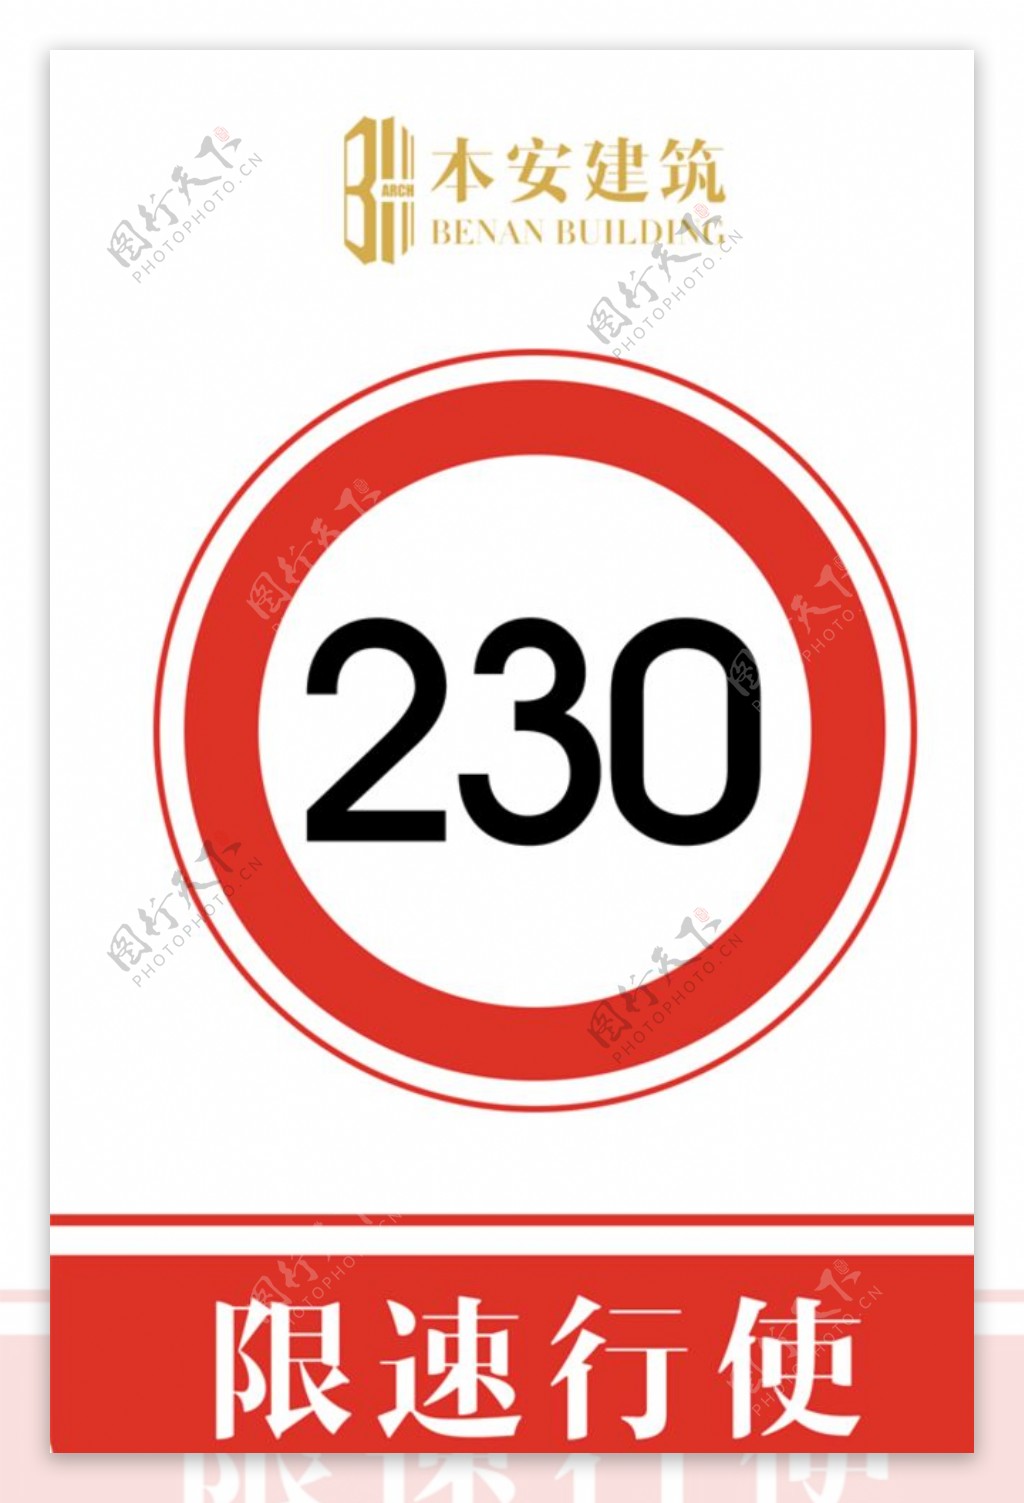 限速行使230公里交通安全标识